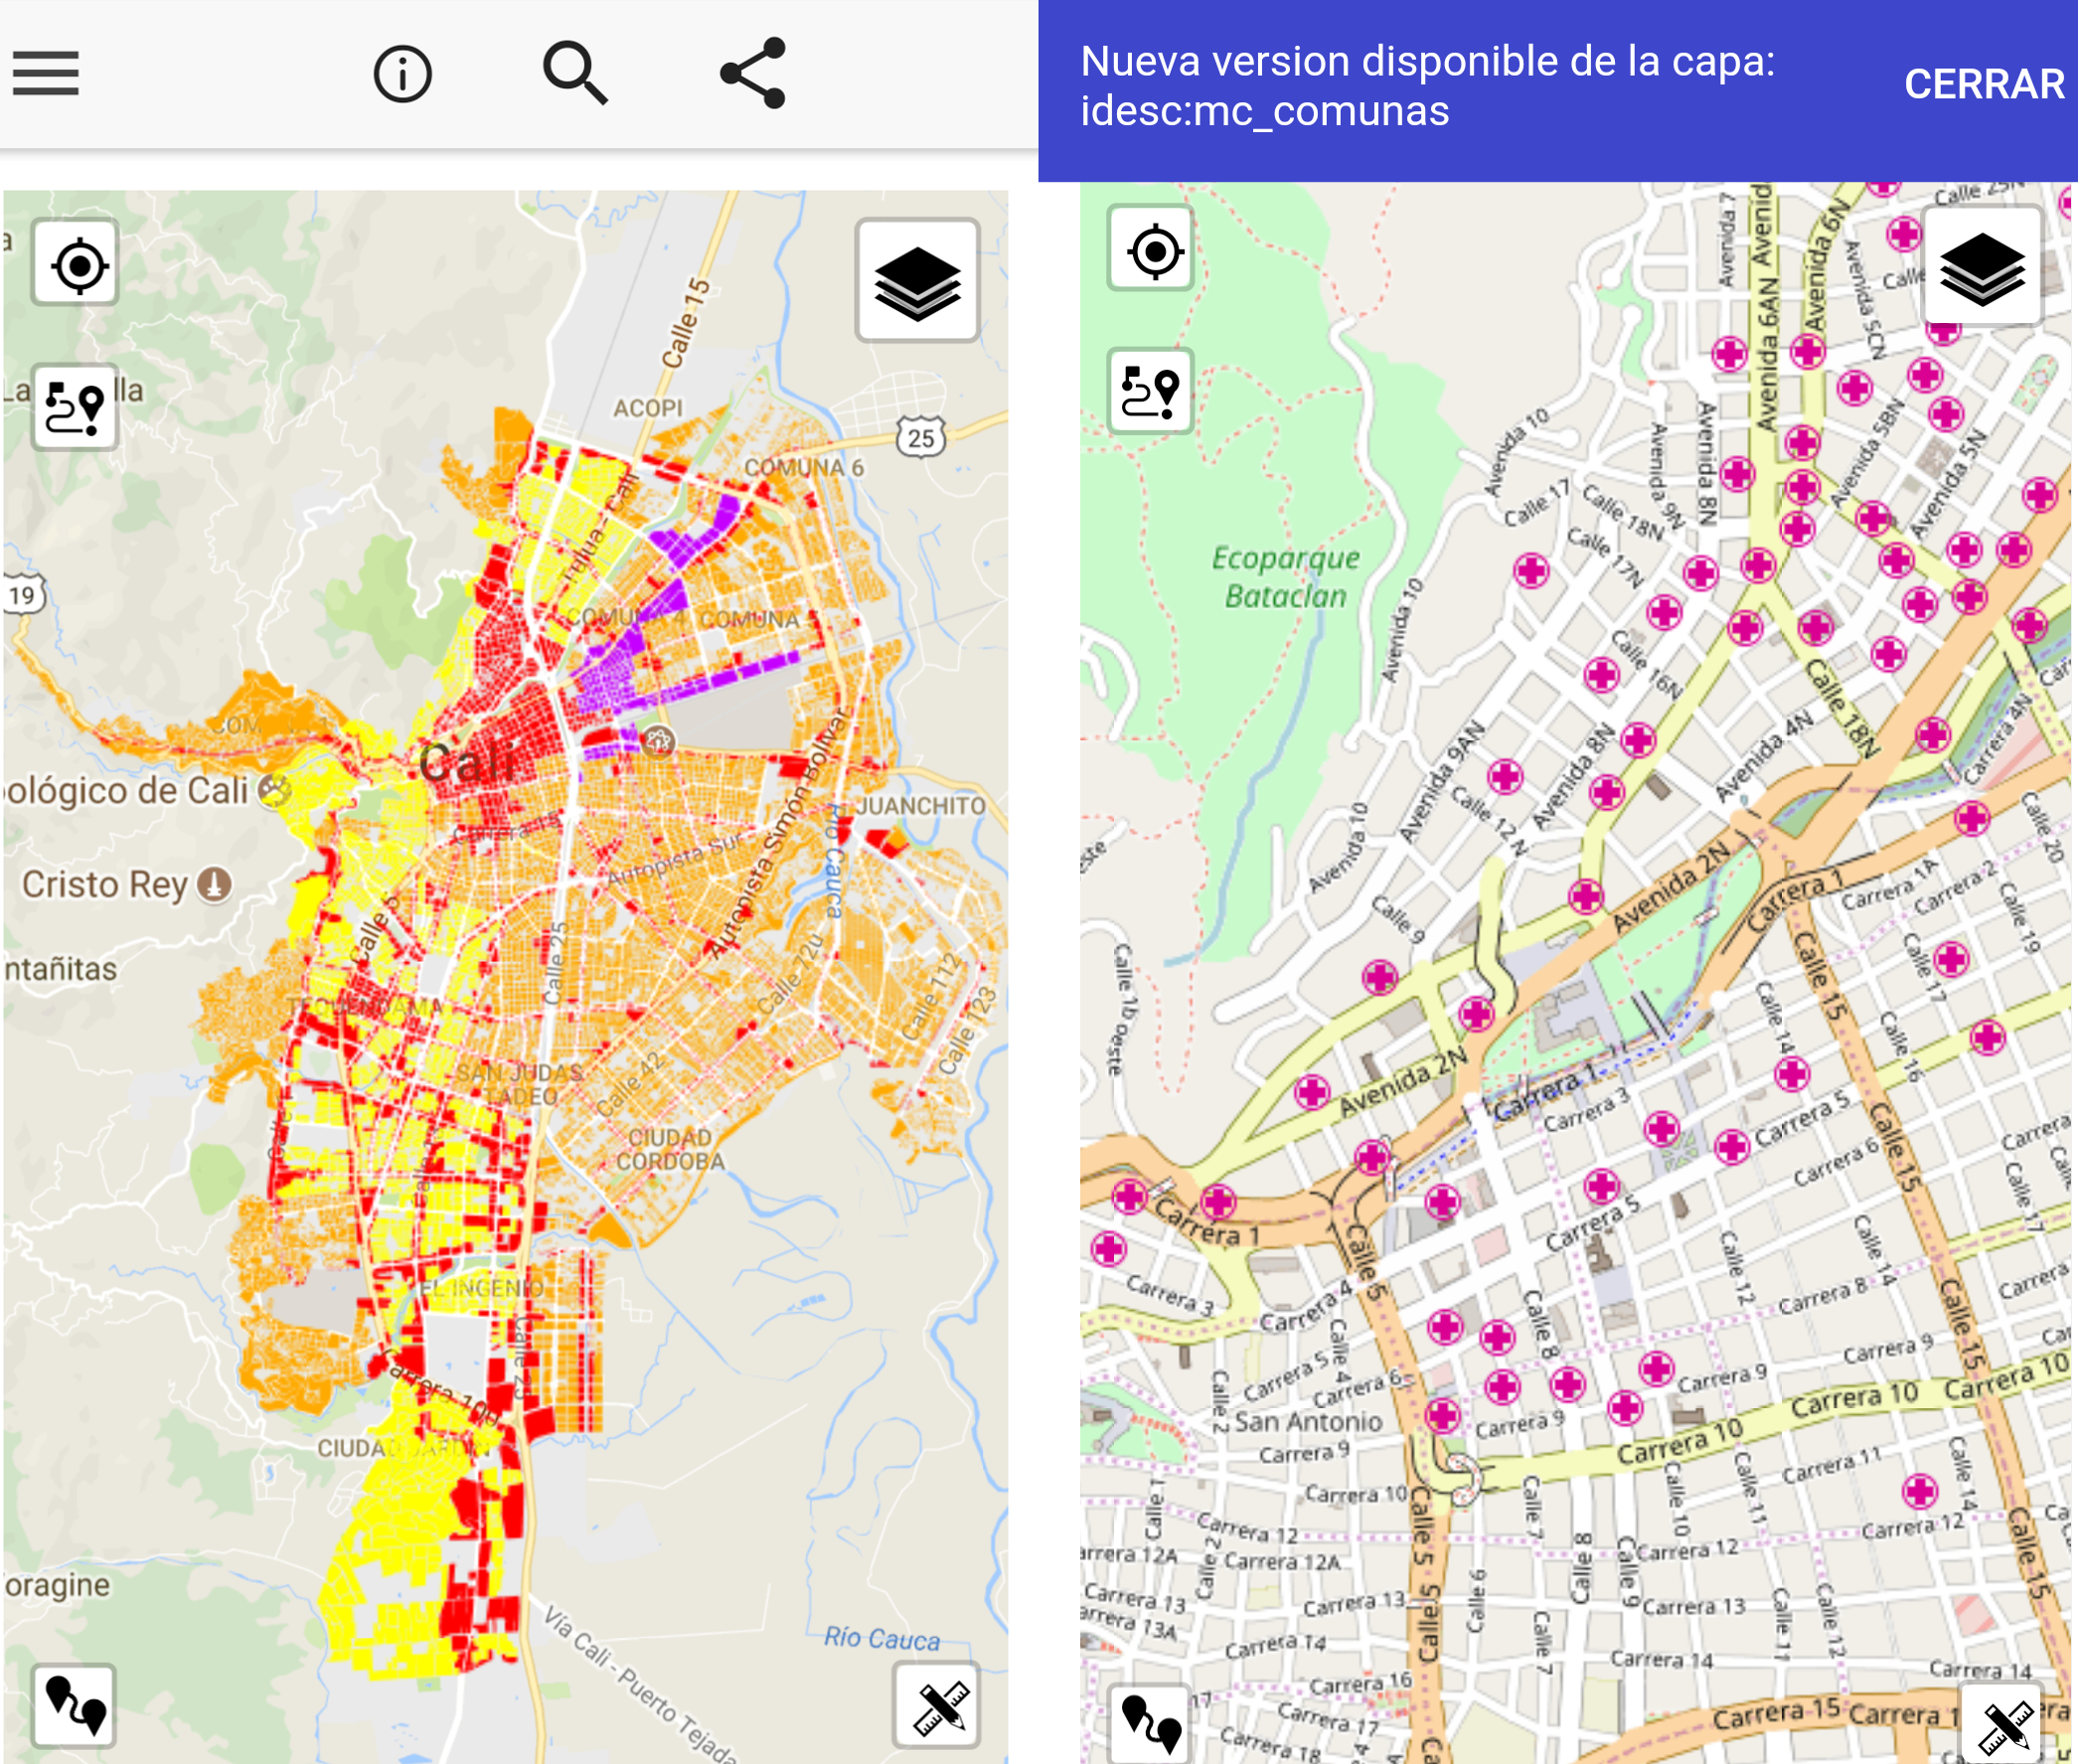 Capturas de pantalla de la aplicación móvil de la IDESC donde se muestran imagenes de dos mapas del Municipio.